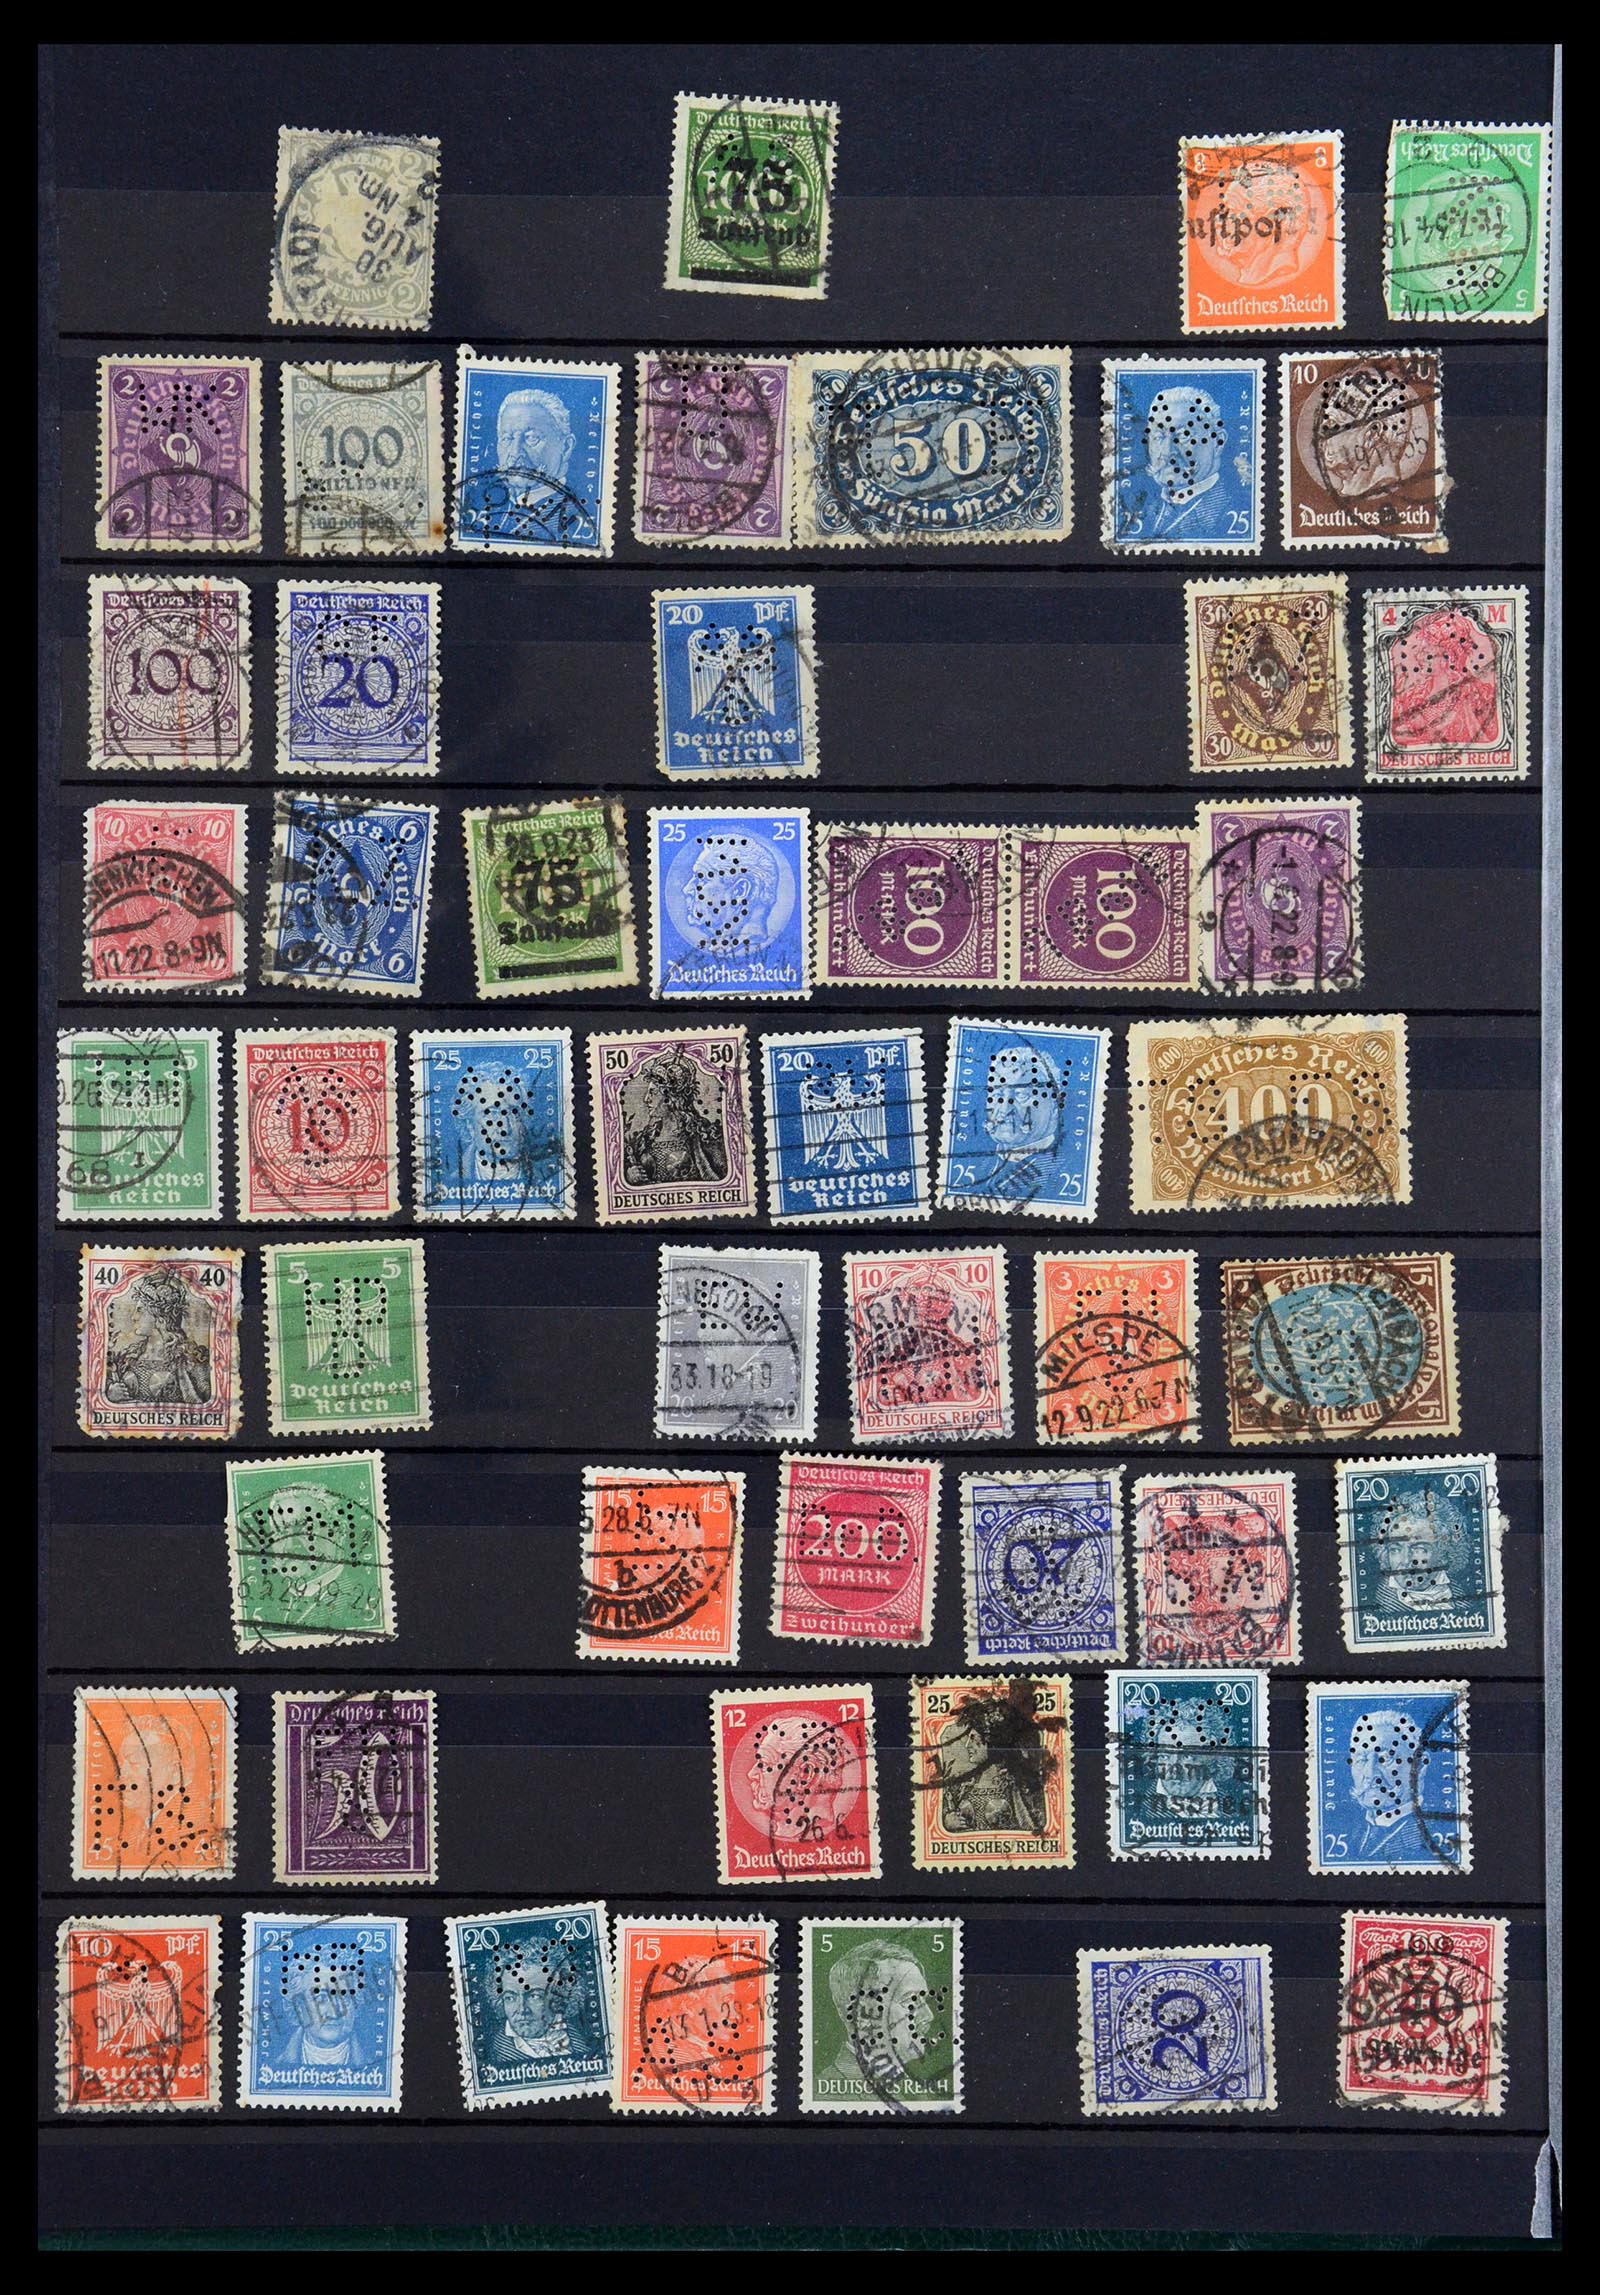 35183 002 - Stamp Collection 35183 German Reich perfins 1880-1945.